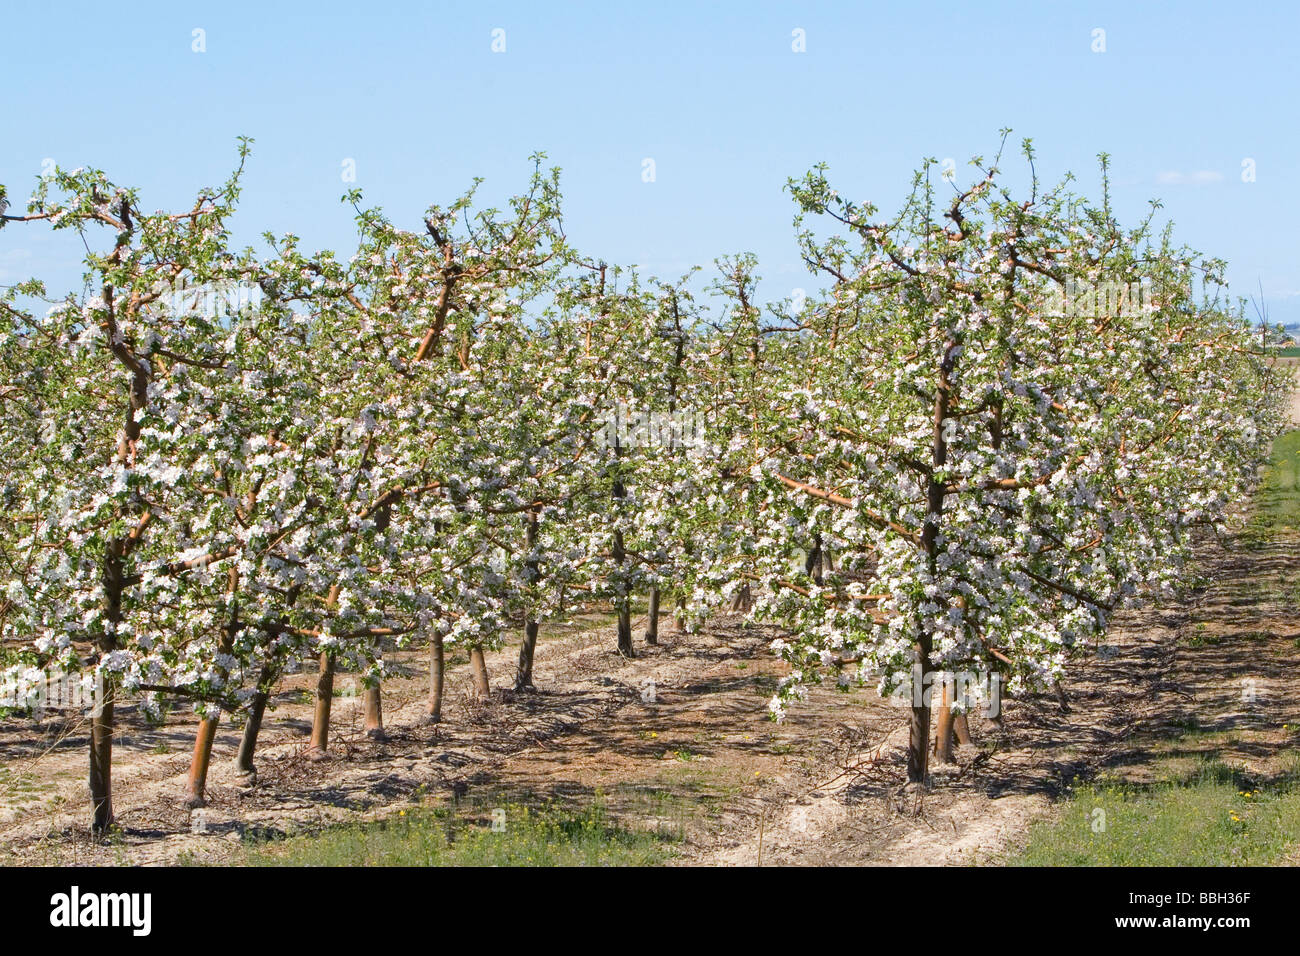 Apple florece en los árboles de un huerto cerca de Parma, Idaho, EE.UU. Foto de stock